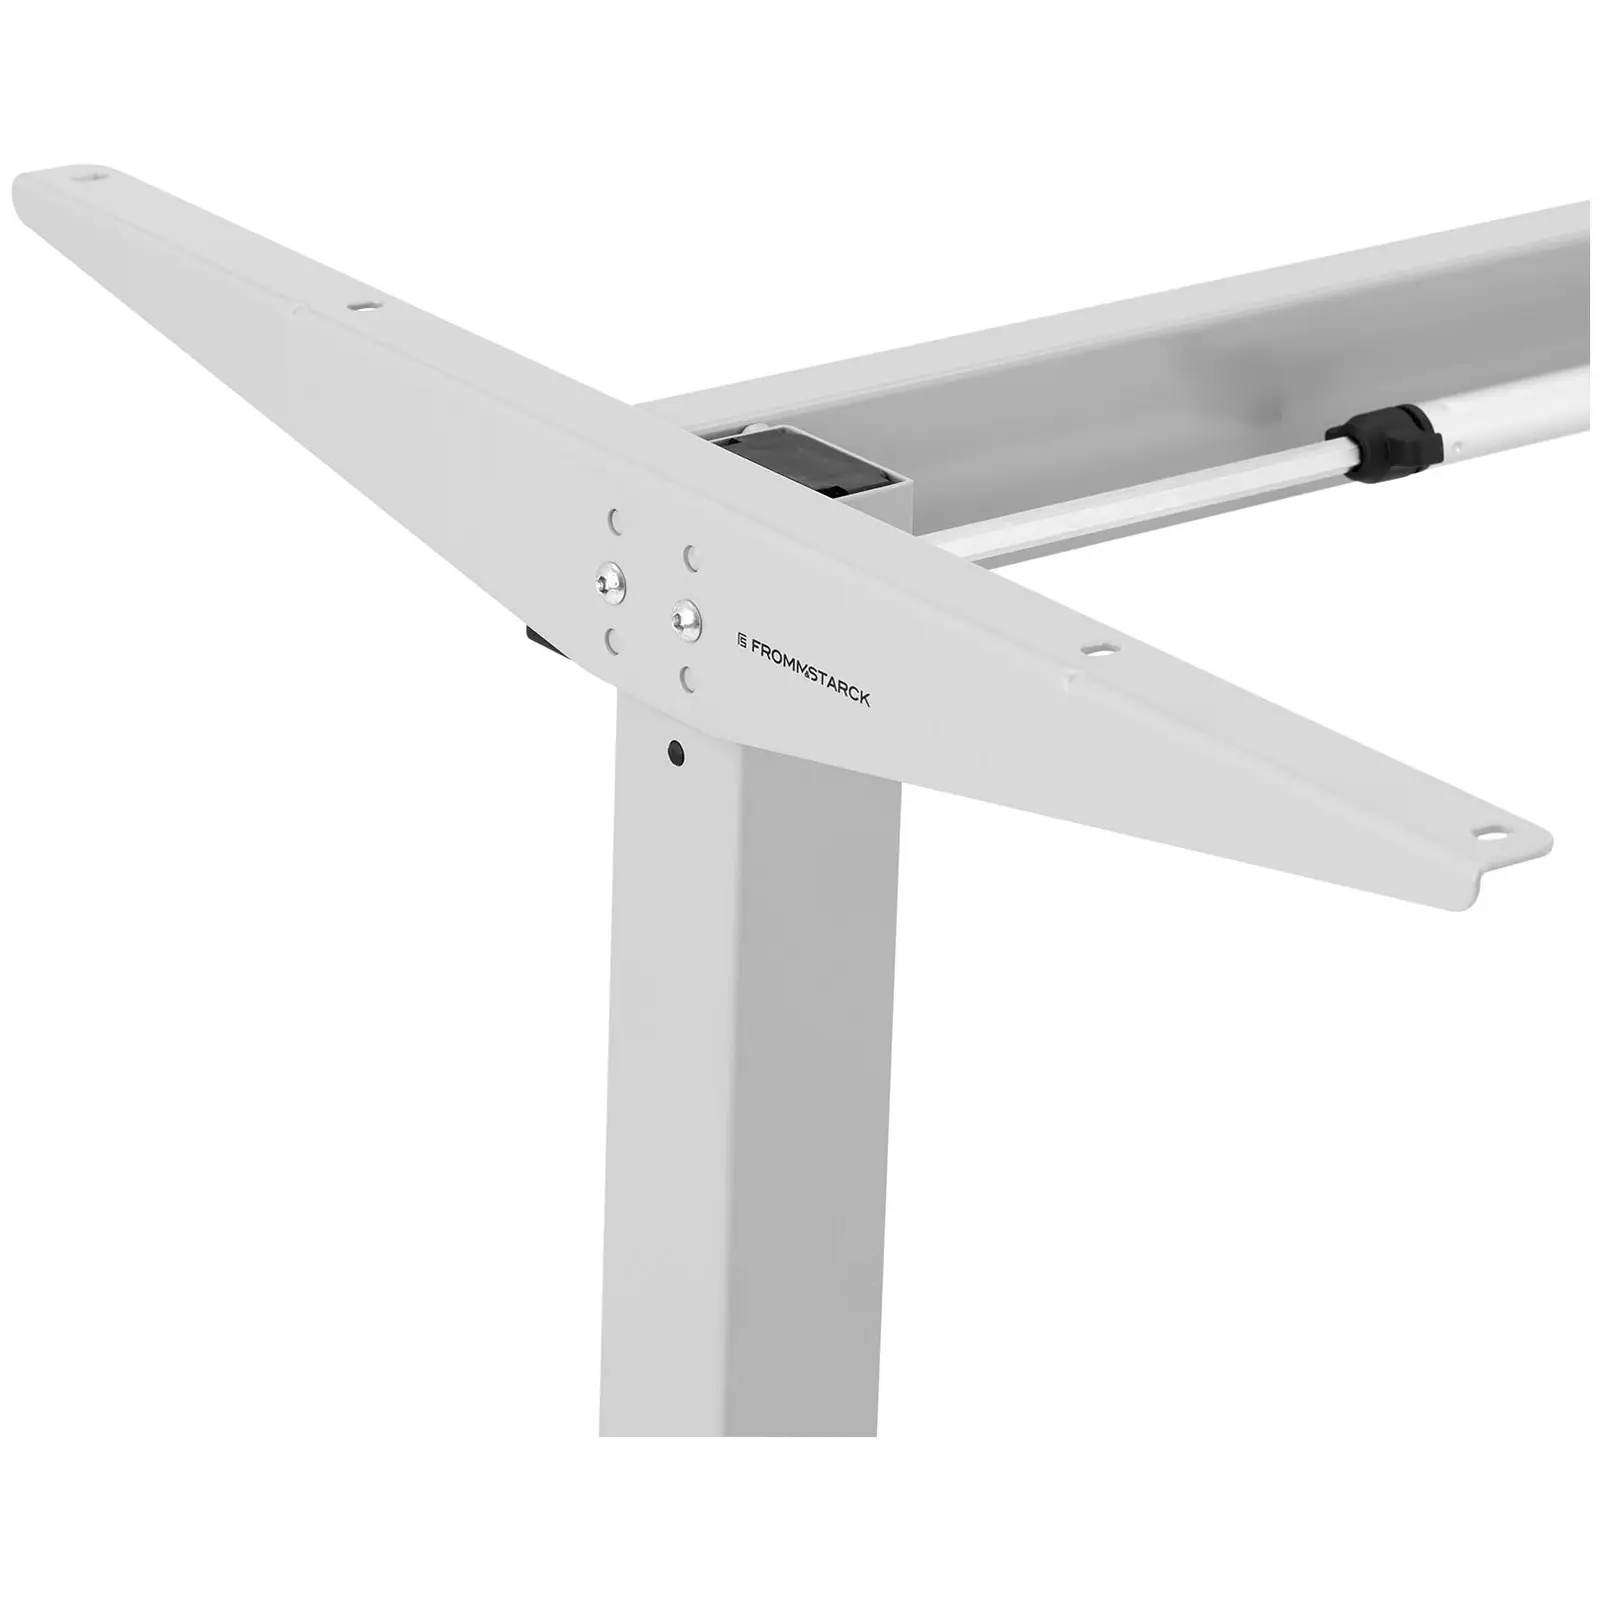 Estrutura para mesa de escritório - ajustável manualmente - 70 kg - cinza